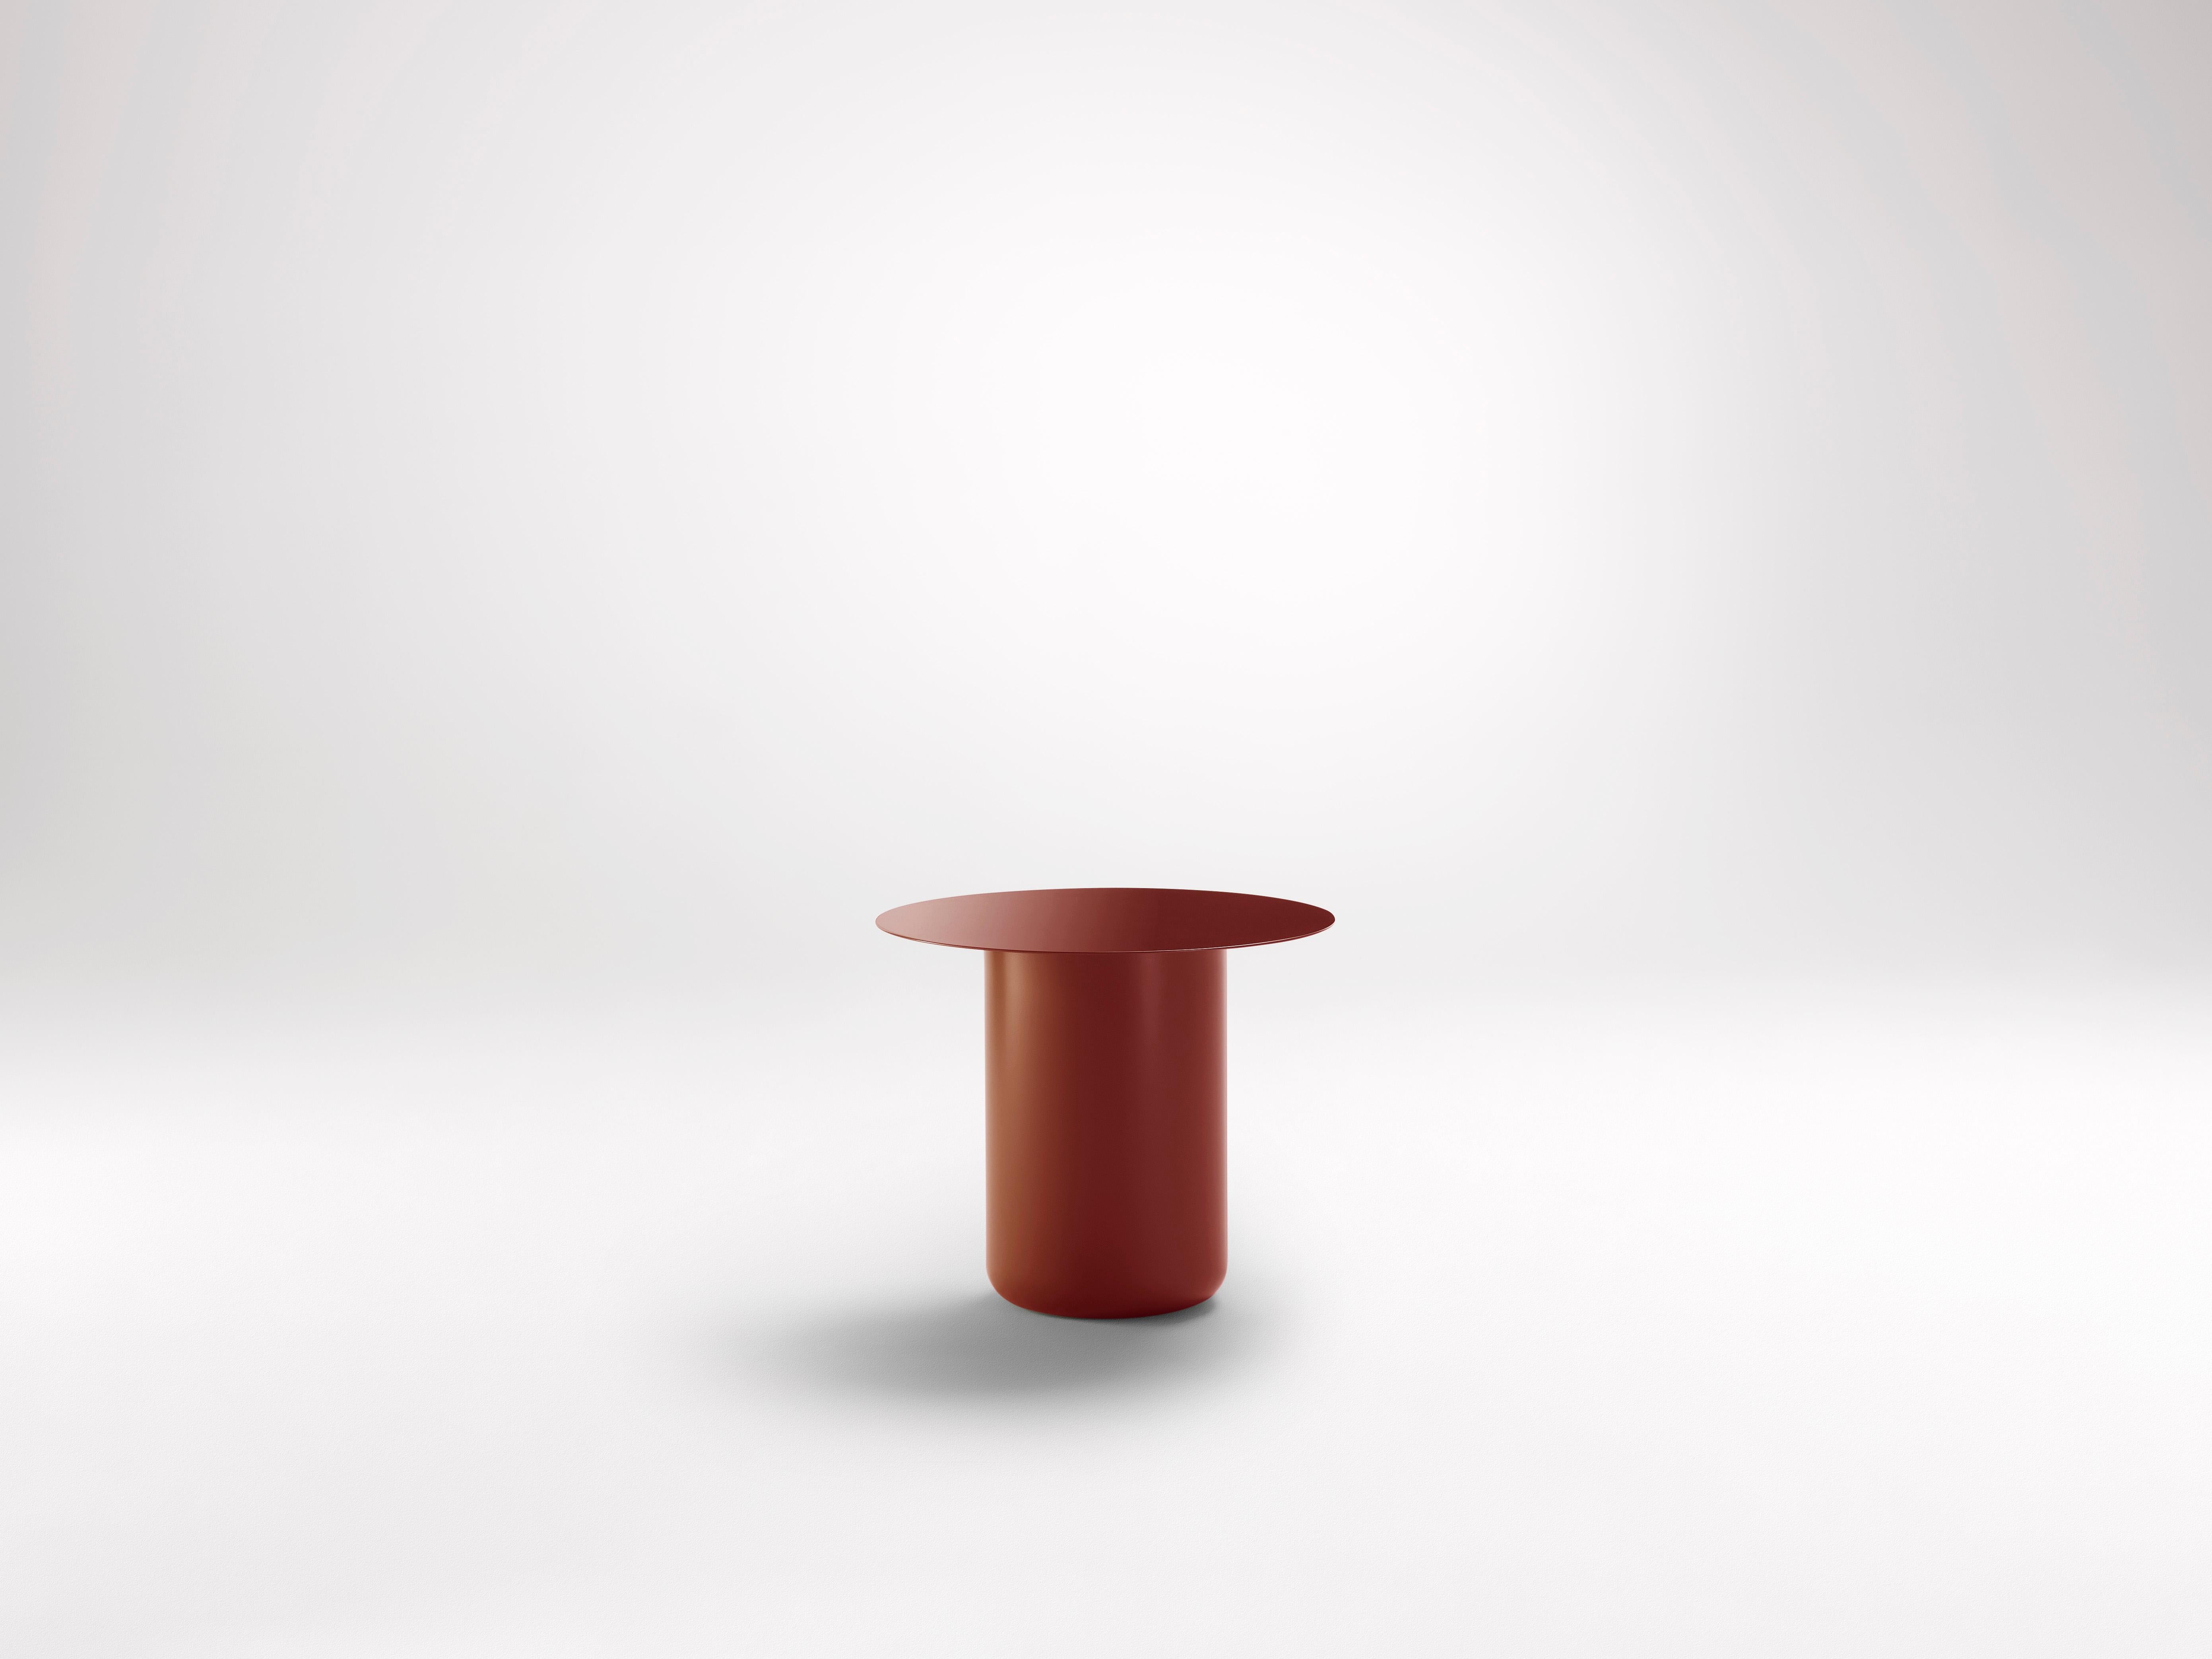 Kopfland-Roter Tisch 01 von Coco Flip
Abmessungen: T 48 x B 48 x H 32 / 36 / 40 / 42 cm
MATERIALIEN: Baustahl, pulverbeschichtet mit Zinkgrundierung. 
Gewicht: 12 kg

Coco Flip ist ein Studio für Möbel- und Beleuchtungsdesign in Melbourne, das von